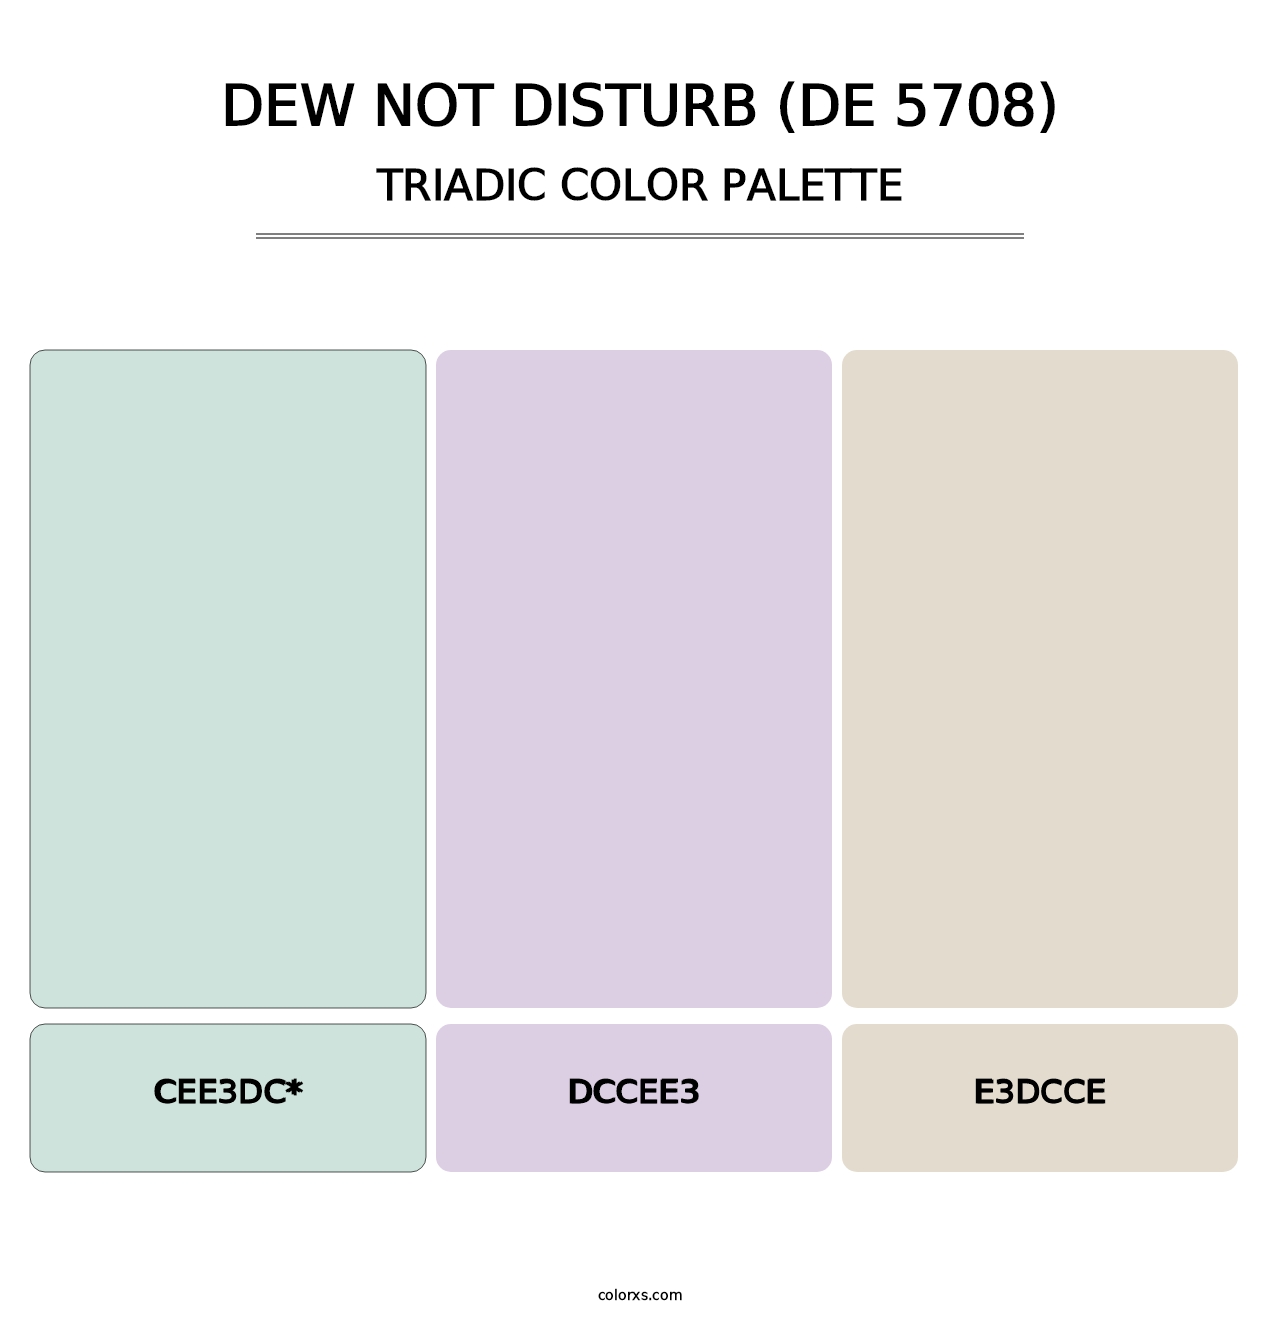 Dew Not Disturb (DE 5708) - Triadic Color Palette